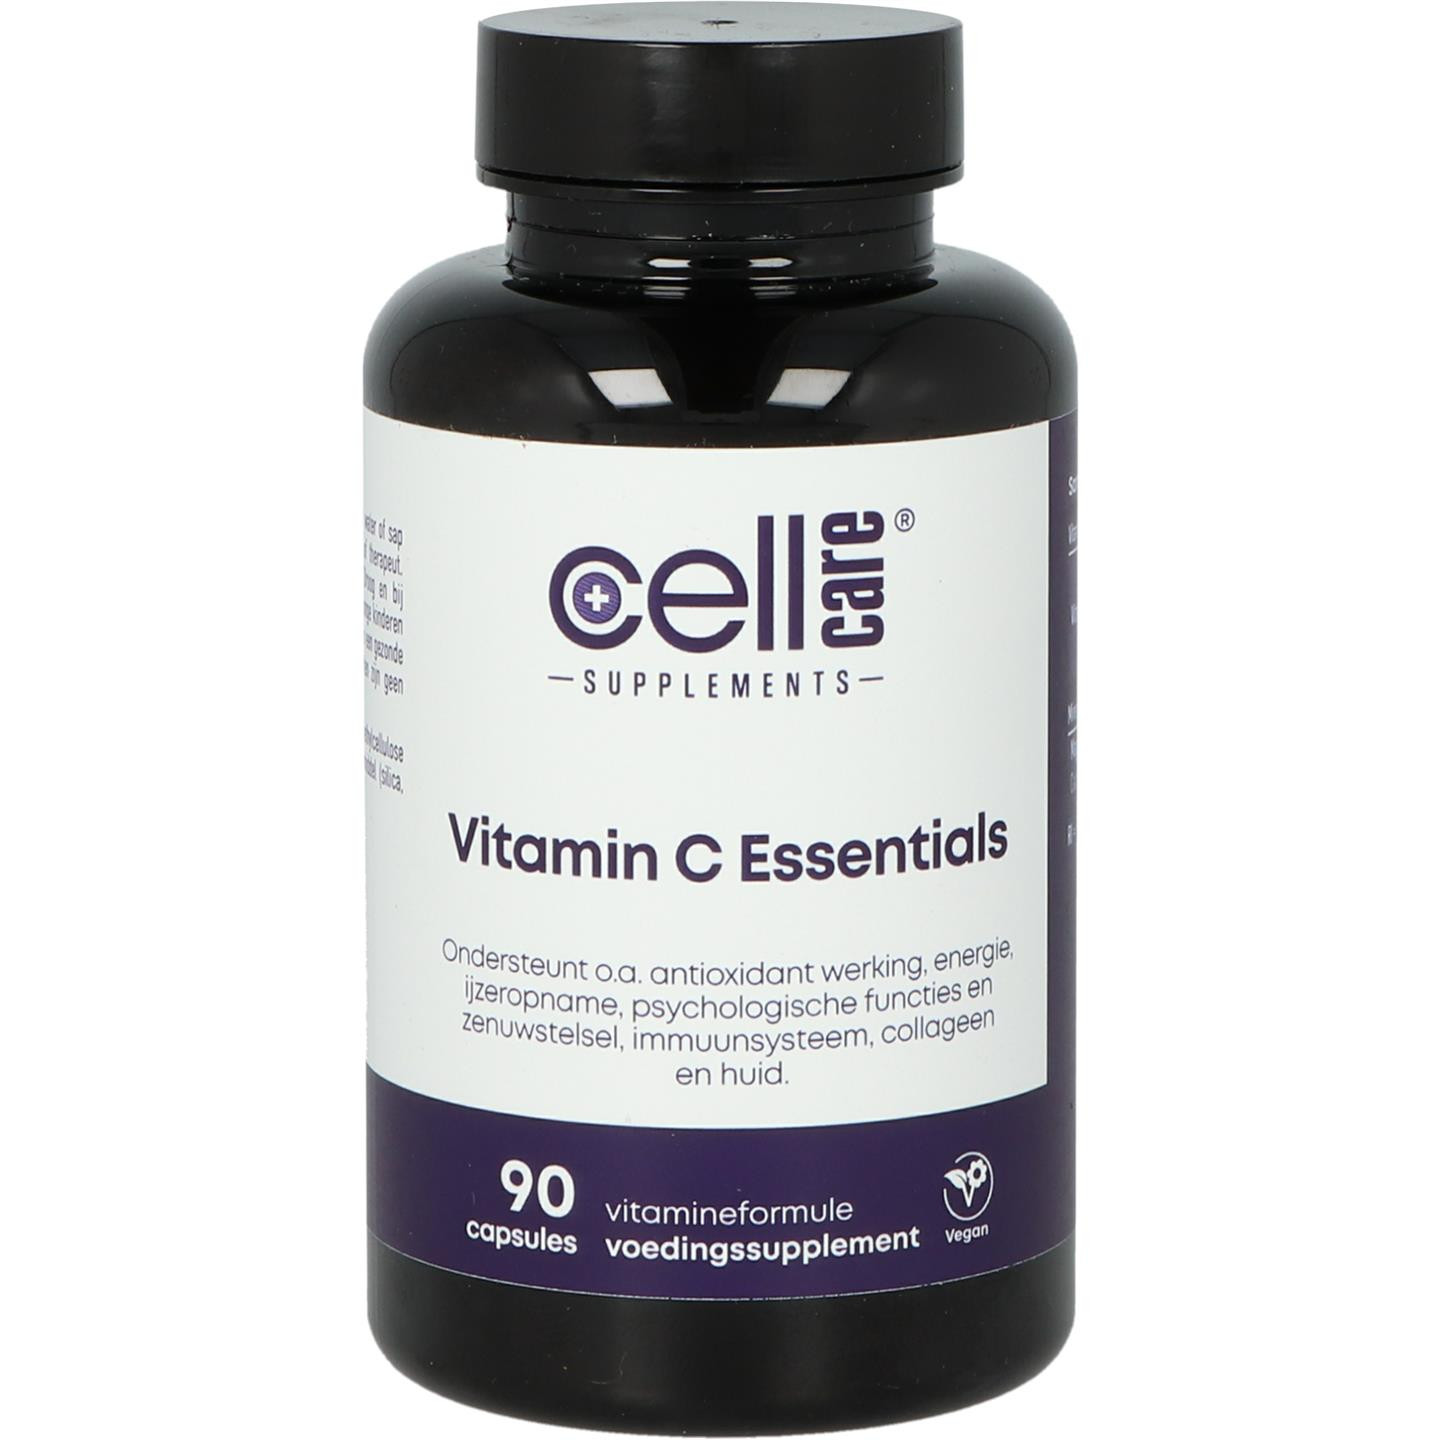 Vitamin C Essentials